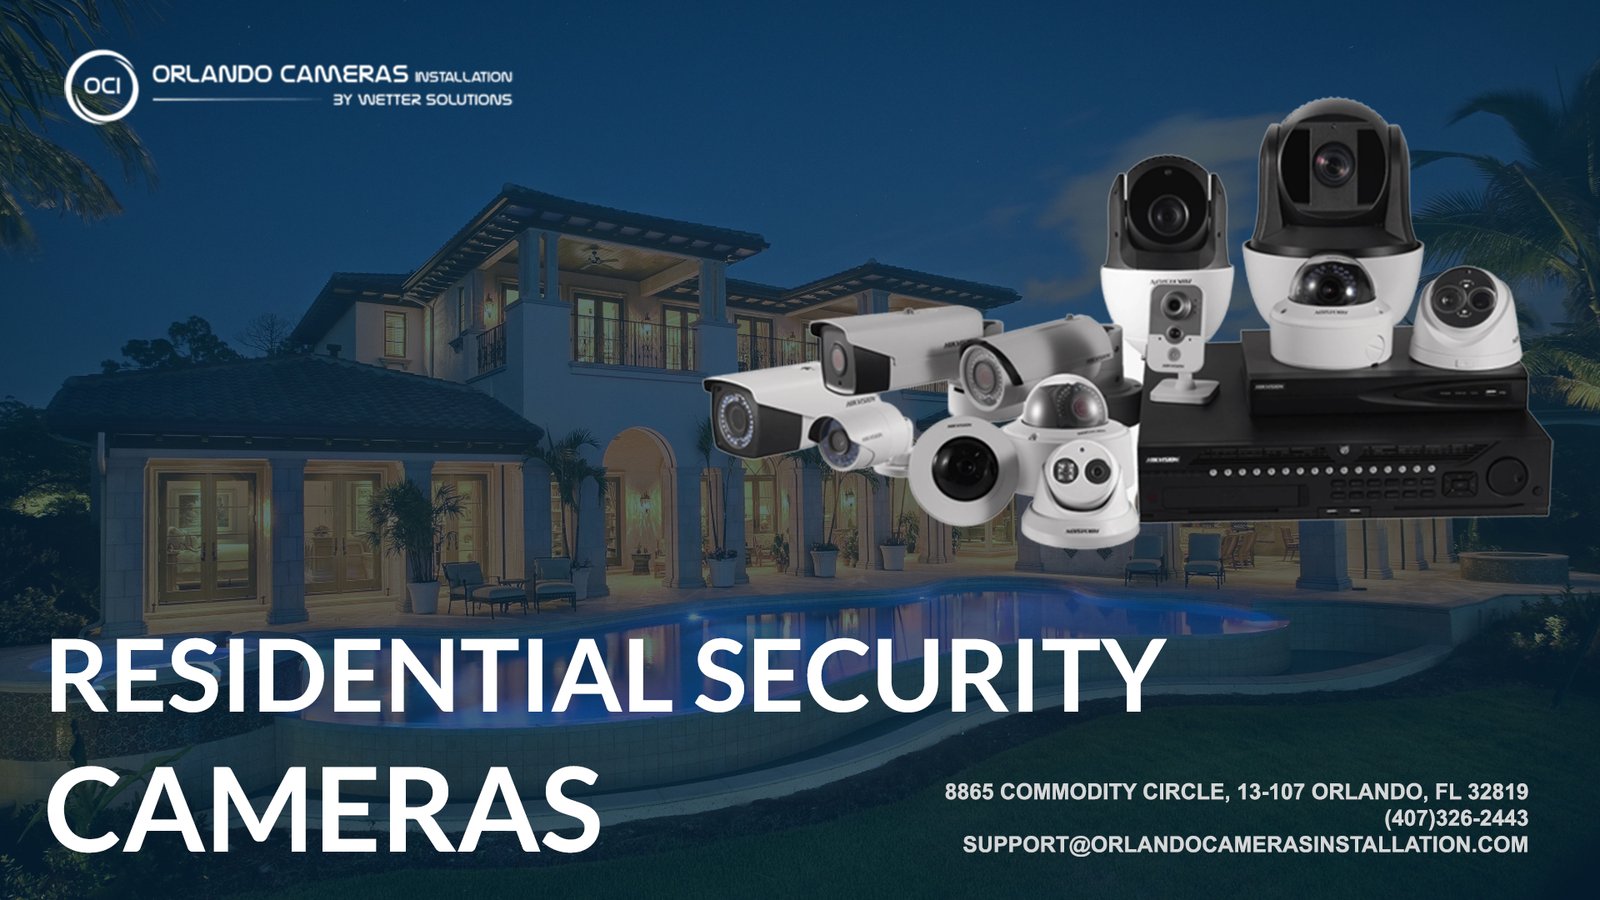 Residential security cameras in Orlando